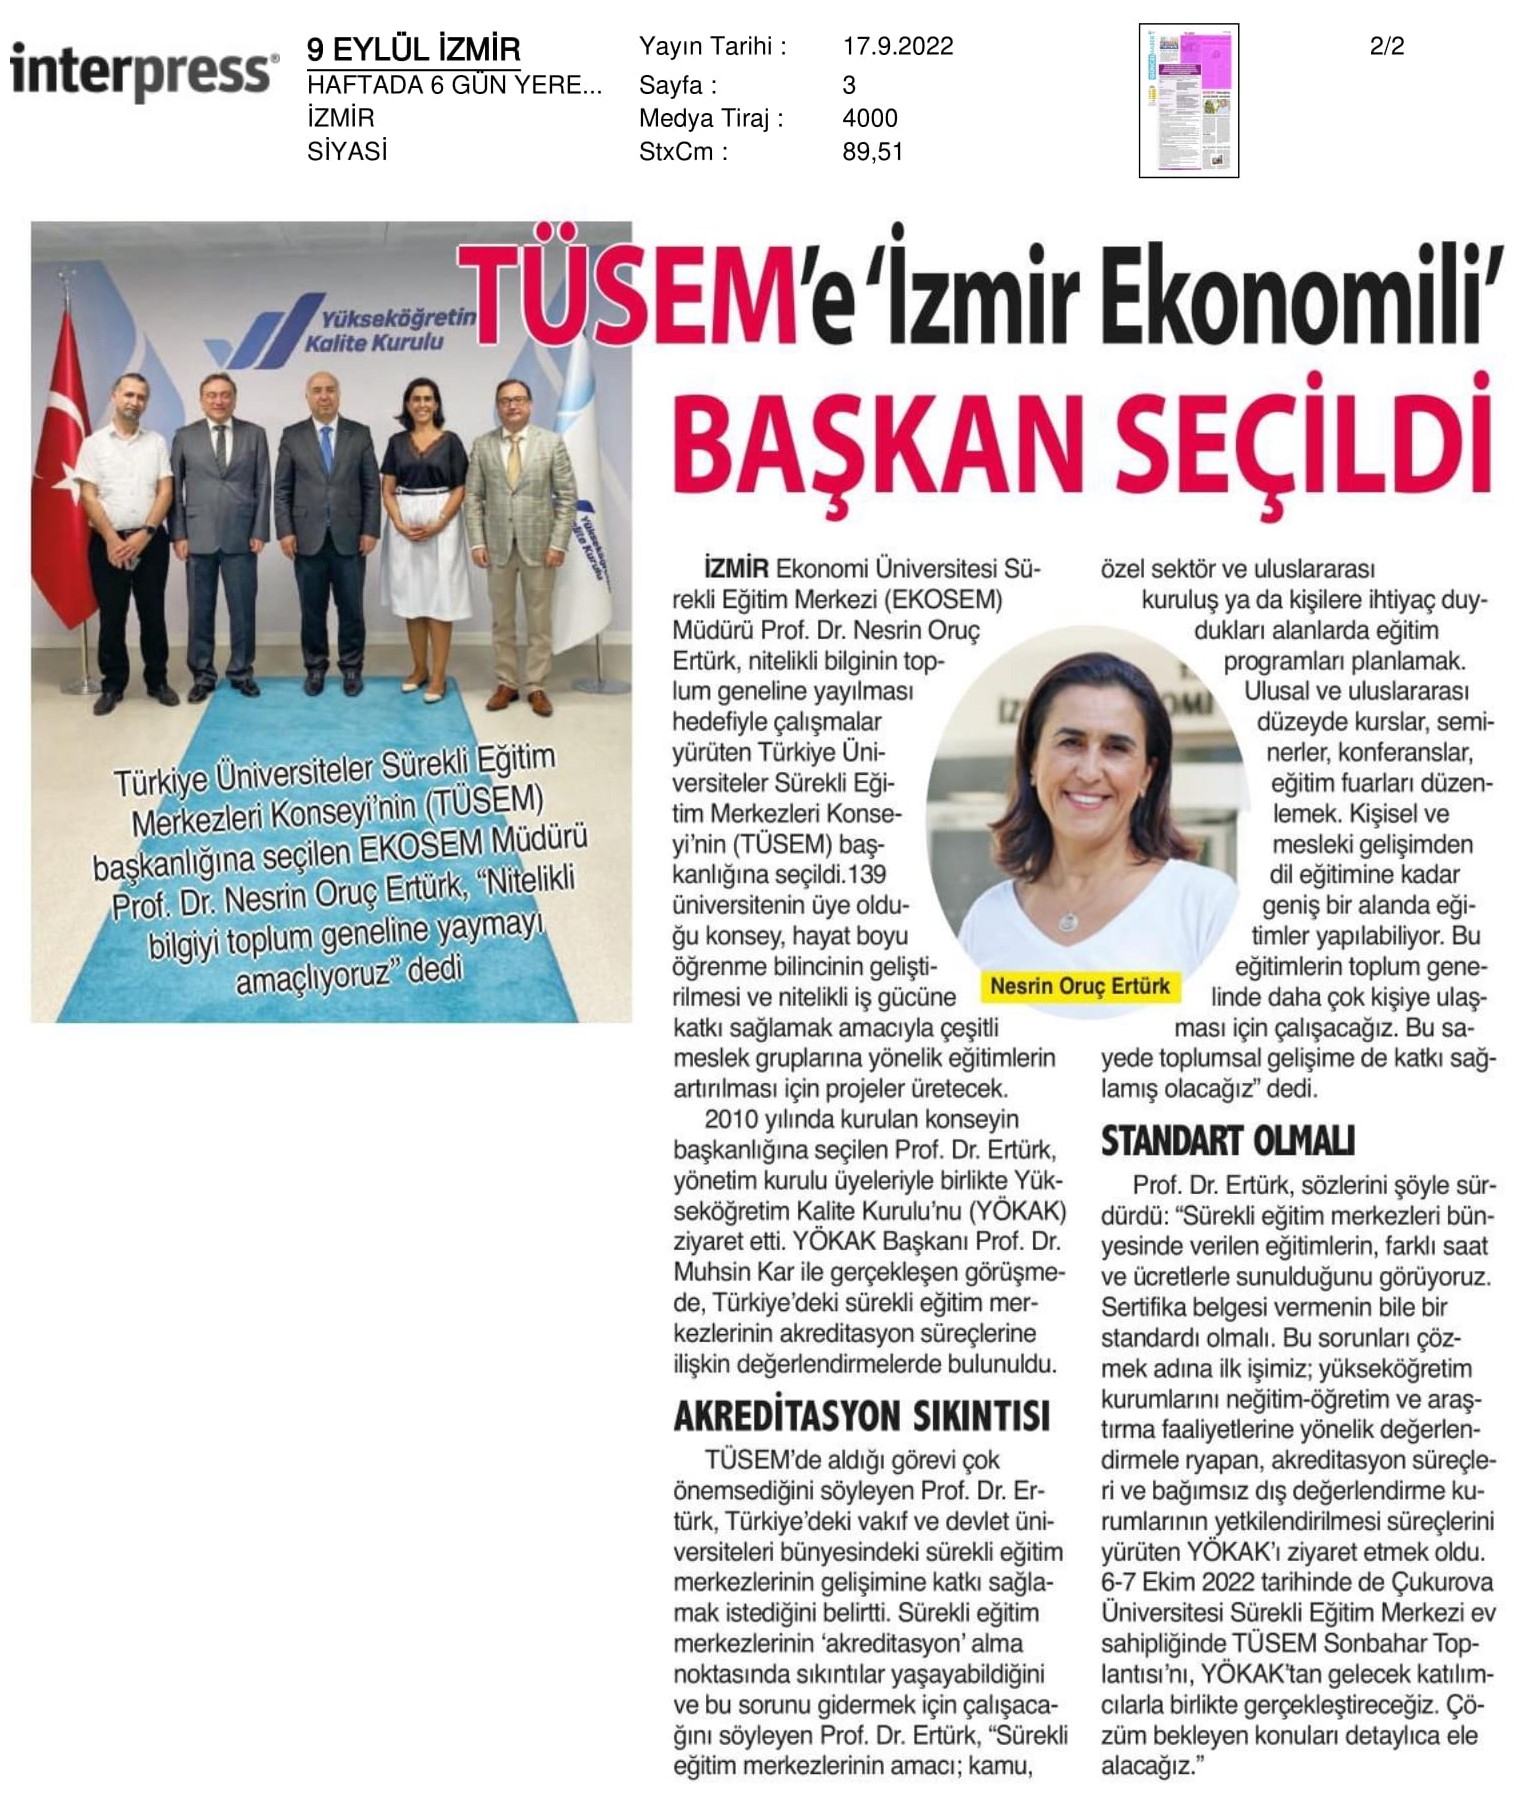 Konseye ‘İzmir Ekonomili’ başkan